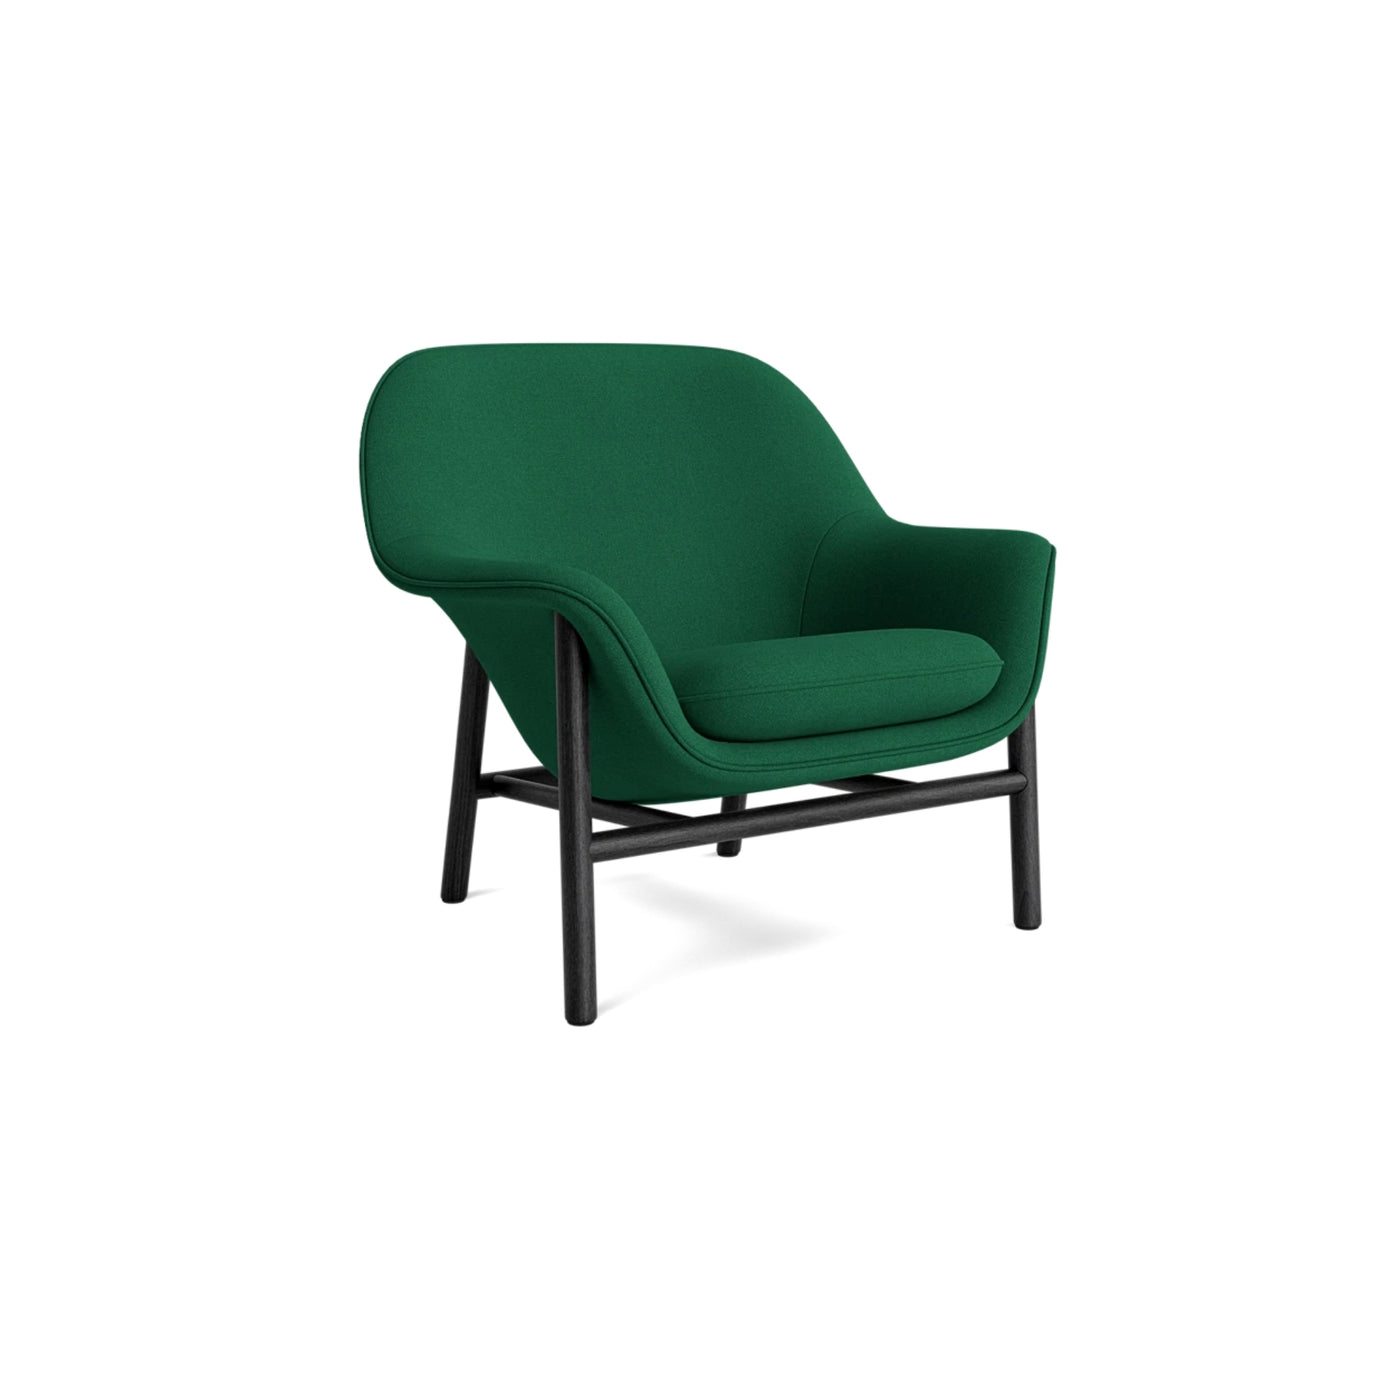 Normann Copenhagen Drape Lounge Chair at someday designs. #colour_hallingdal-944